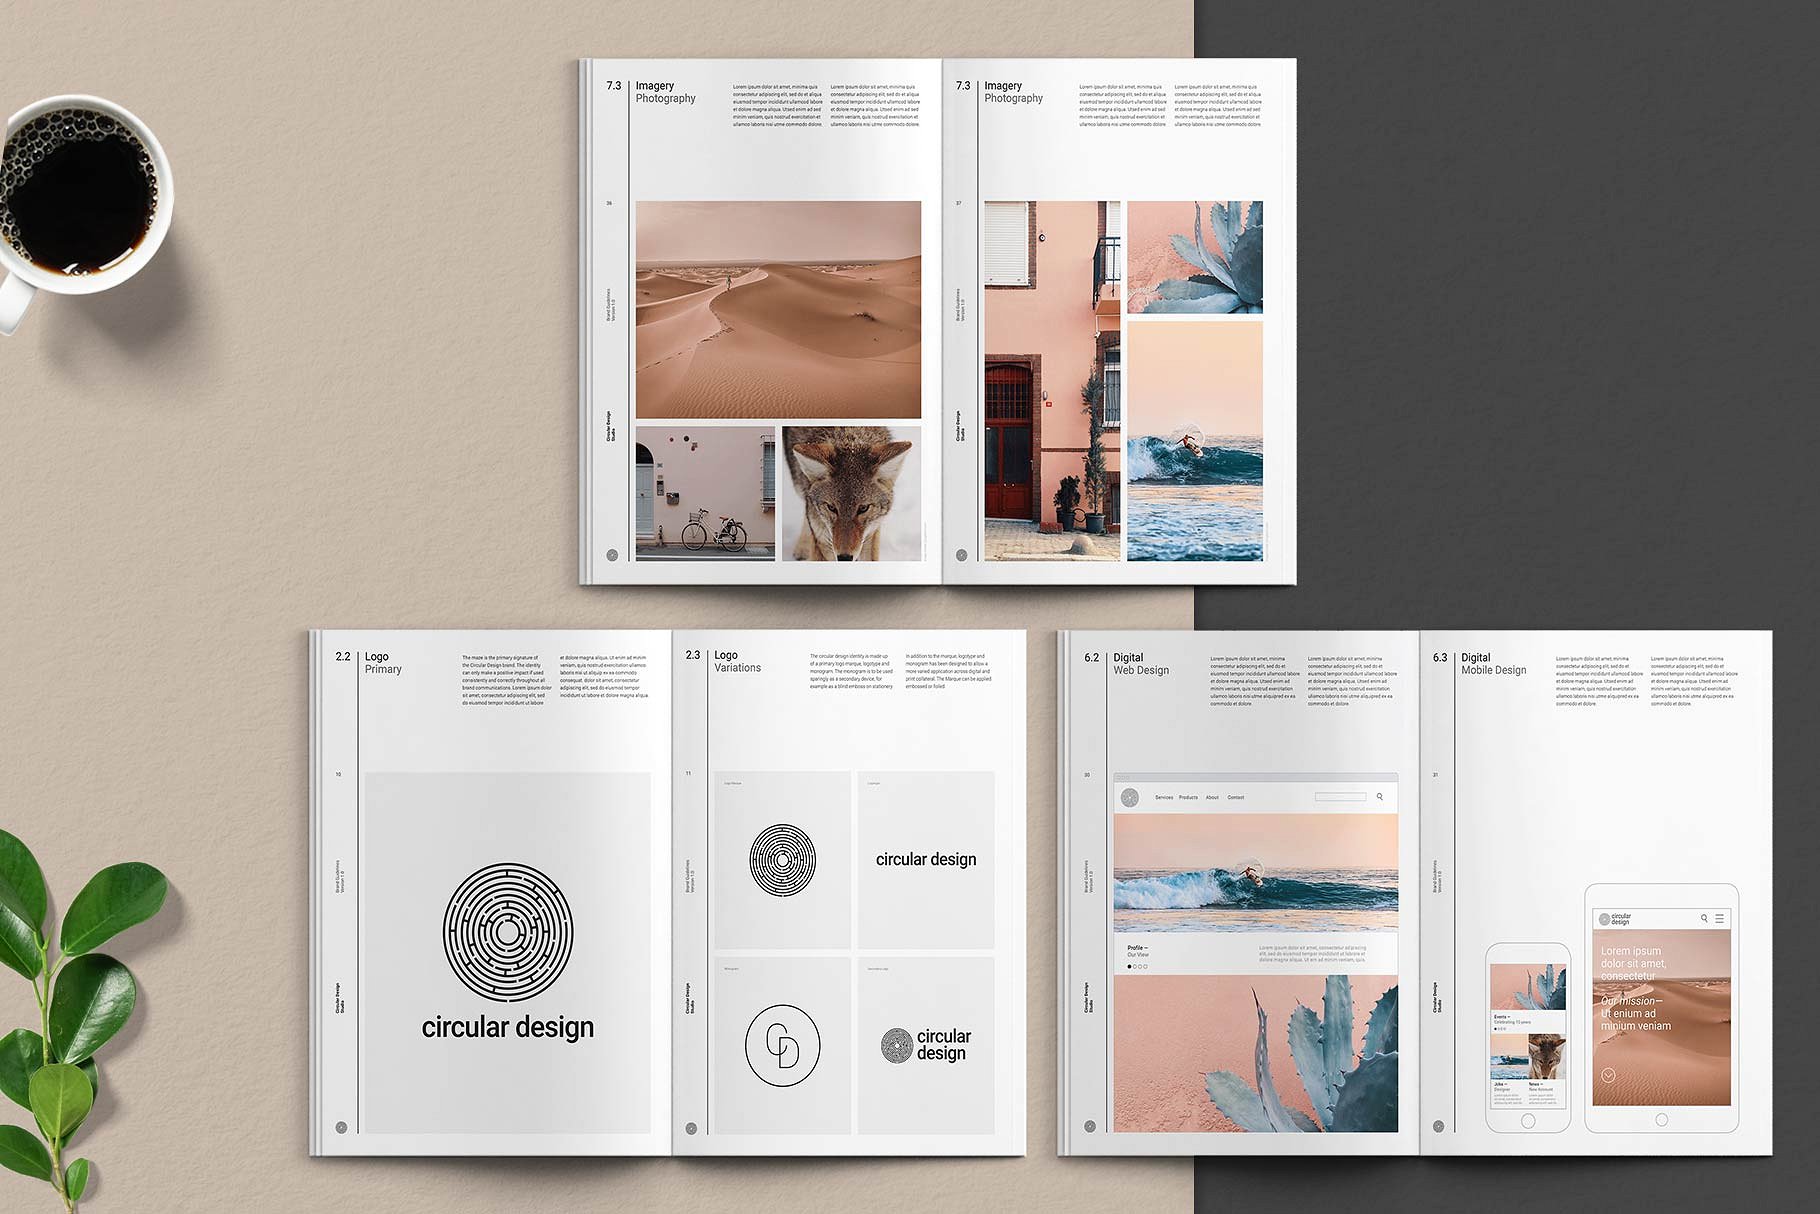 极简主义的品牌规范指南杂志InDesign模板下载 THE MINIMALIST / Bundle Pack [indd]插图2